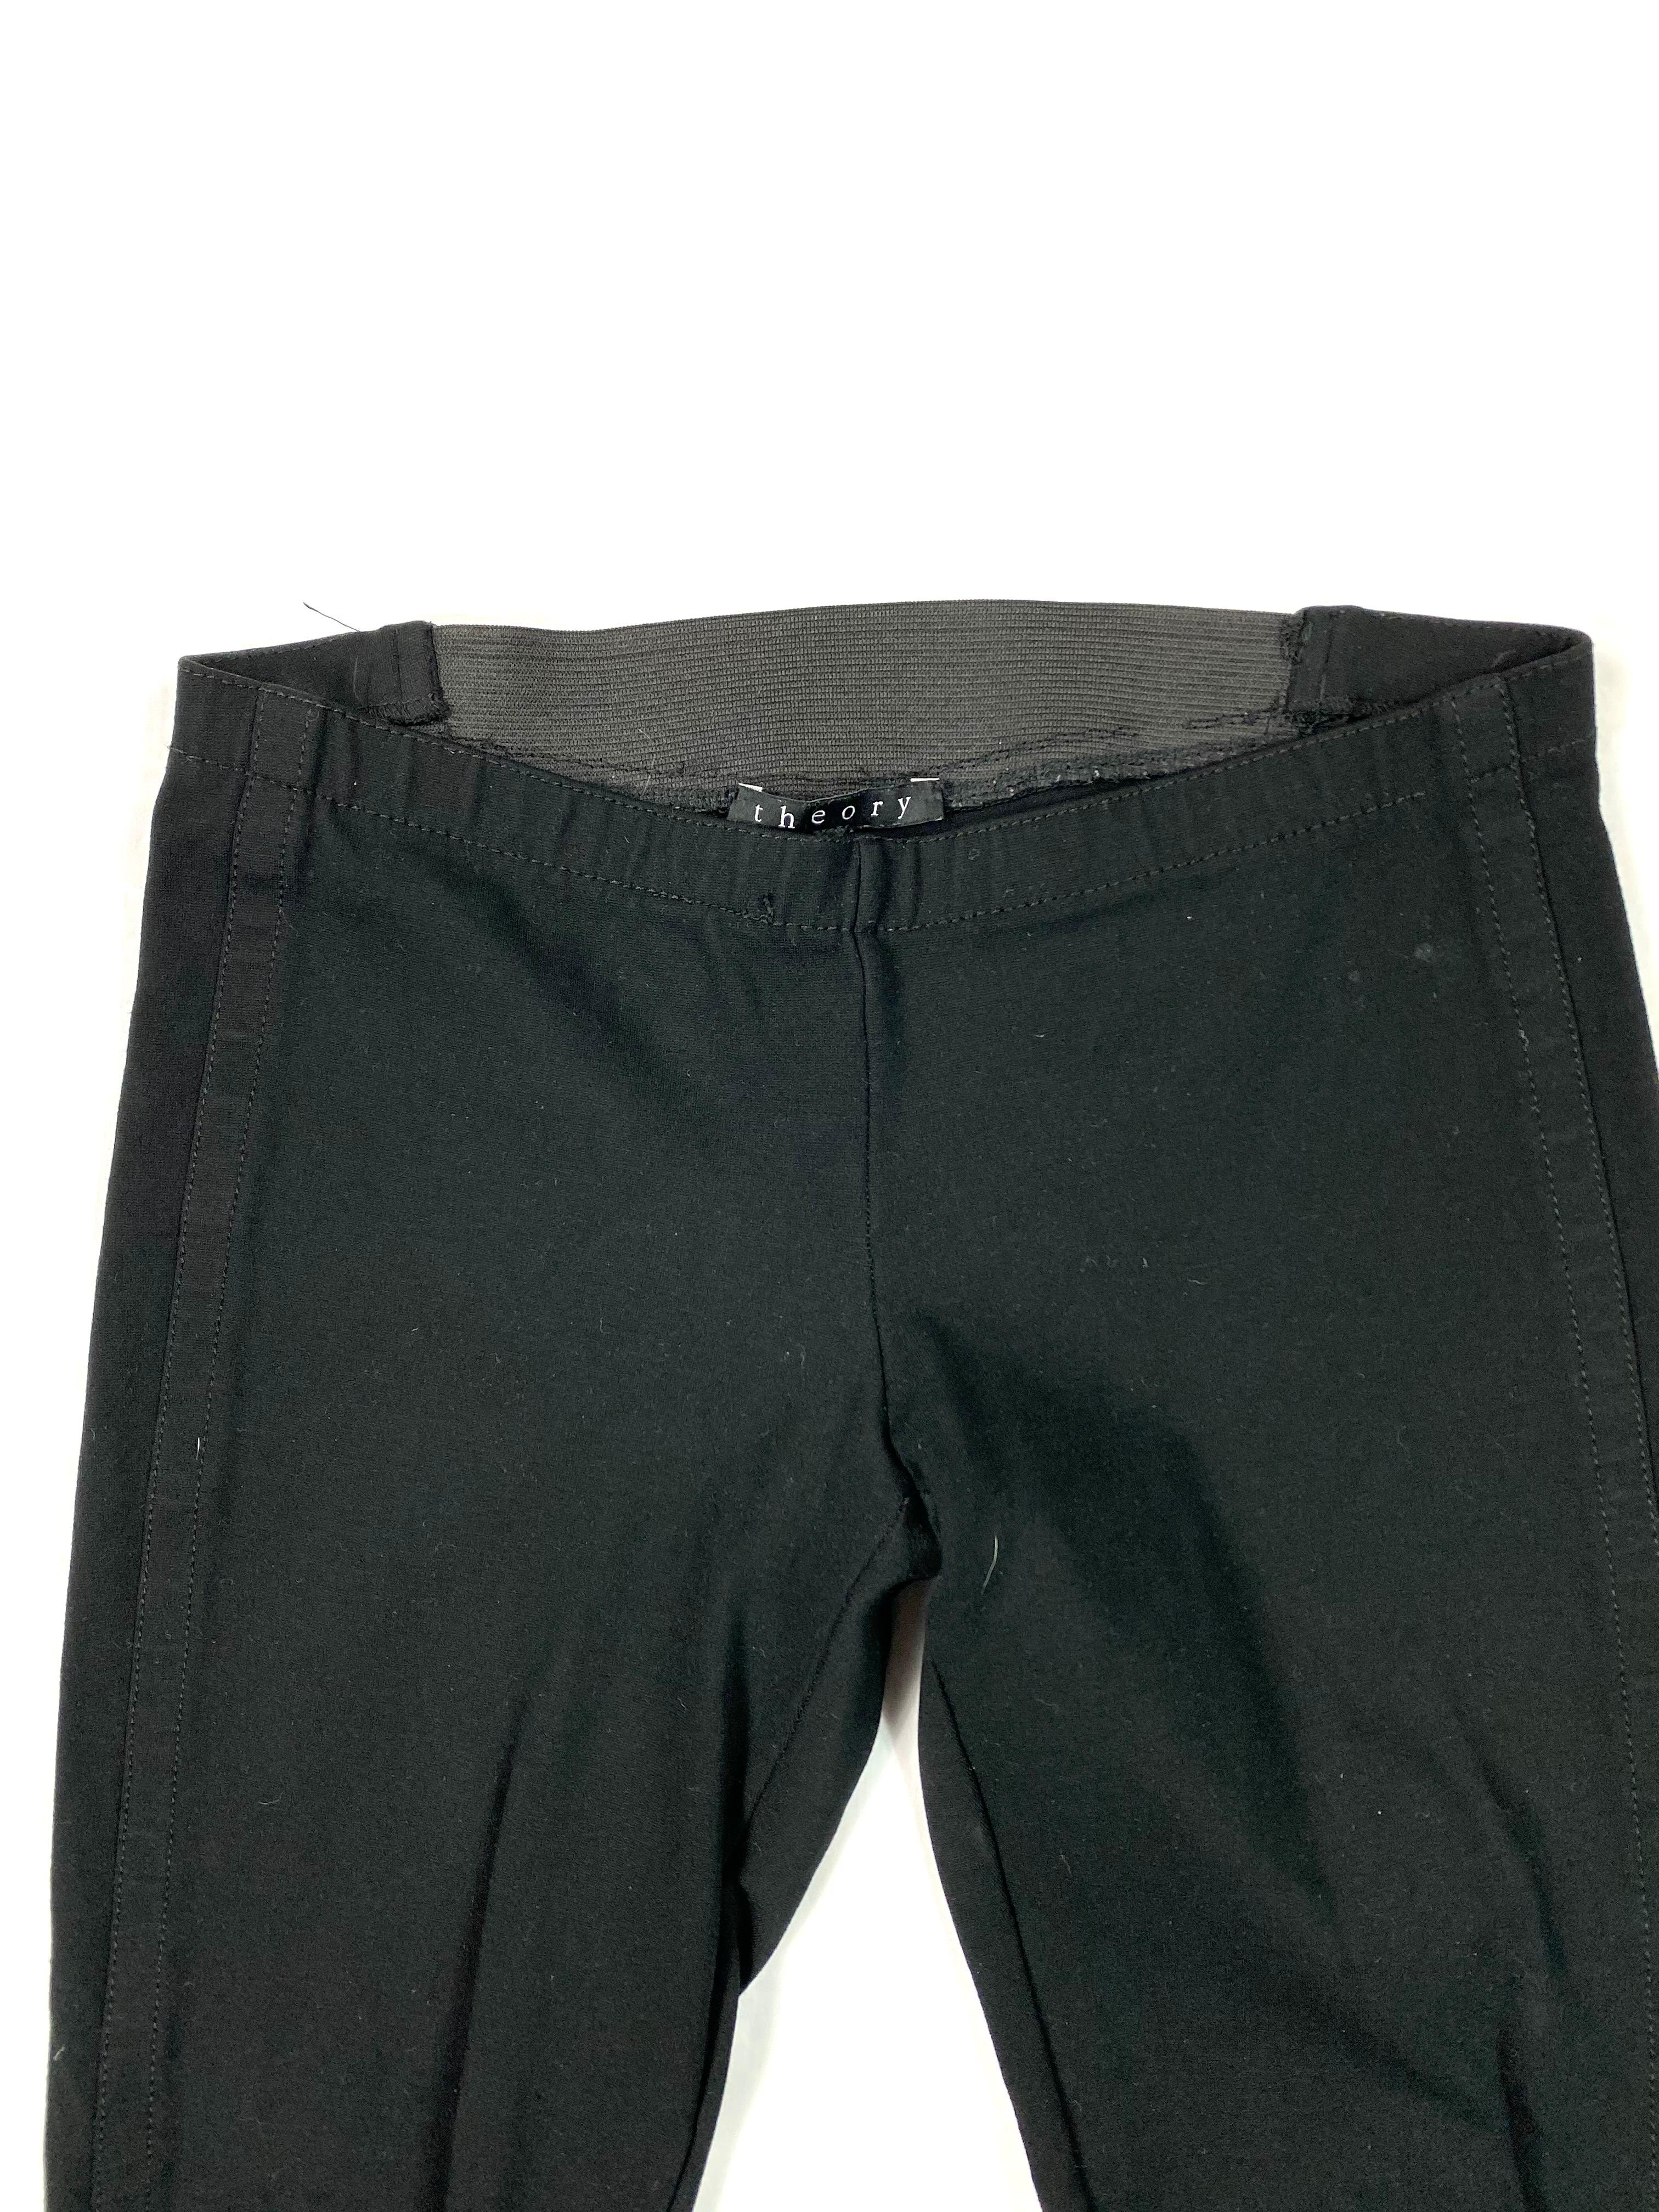 Einzelheiten zum Produkt:

Die Hose hat eine schmale Passform mit dehnbarem Gummi auf der Rückseite, eine Hose im Leggings-Stil.